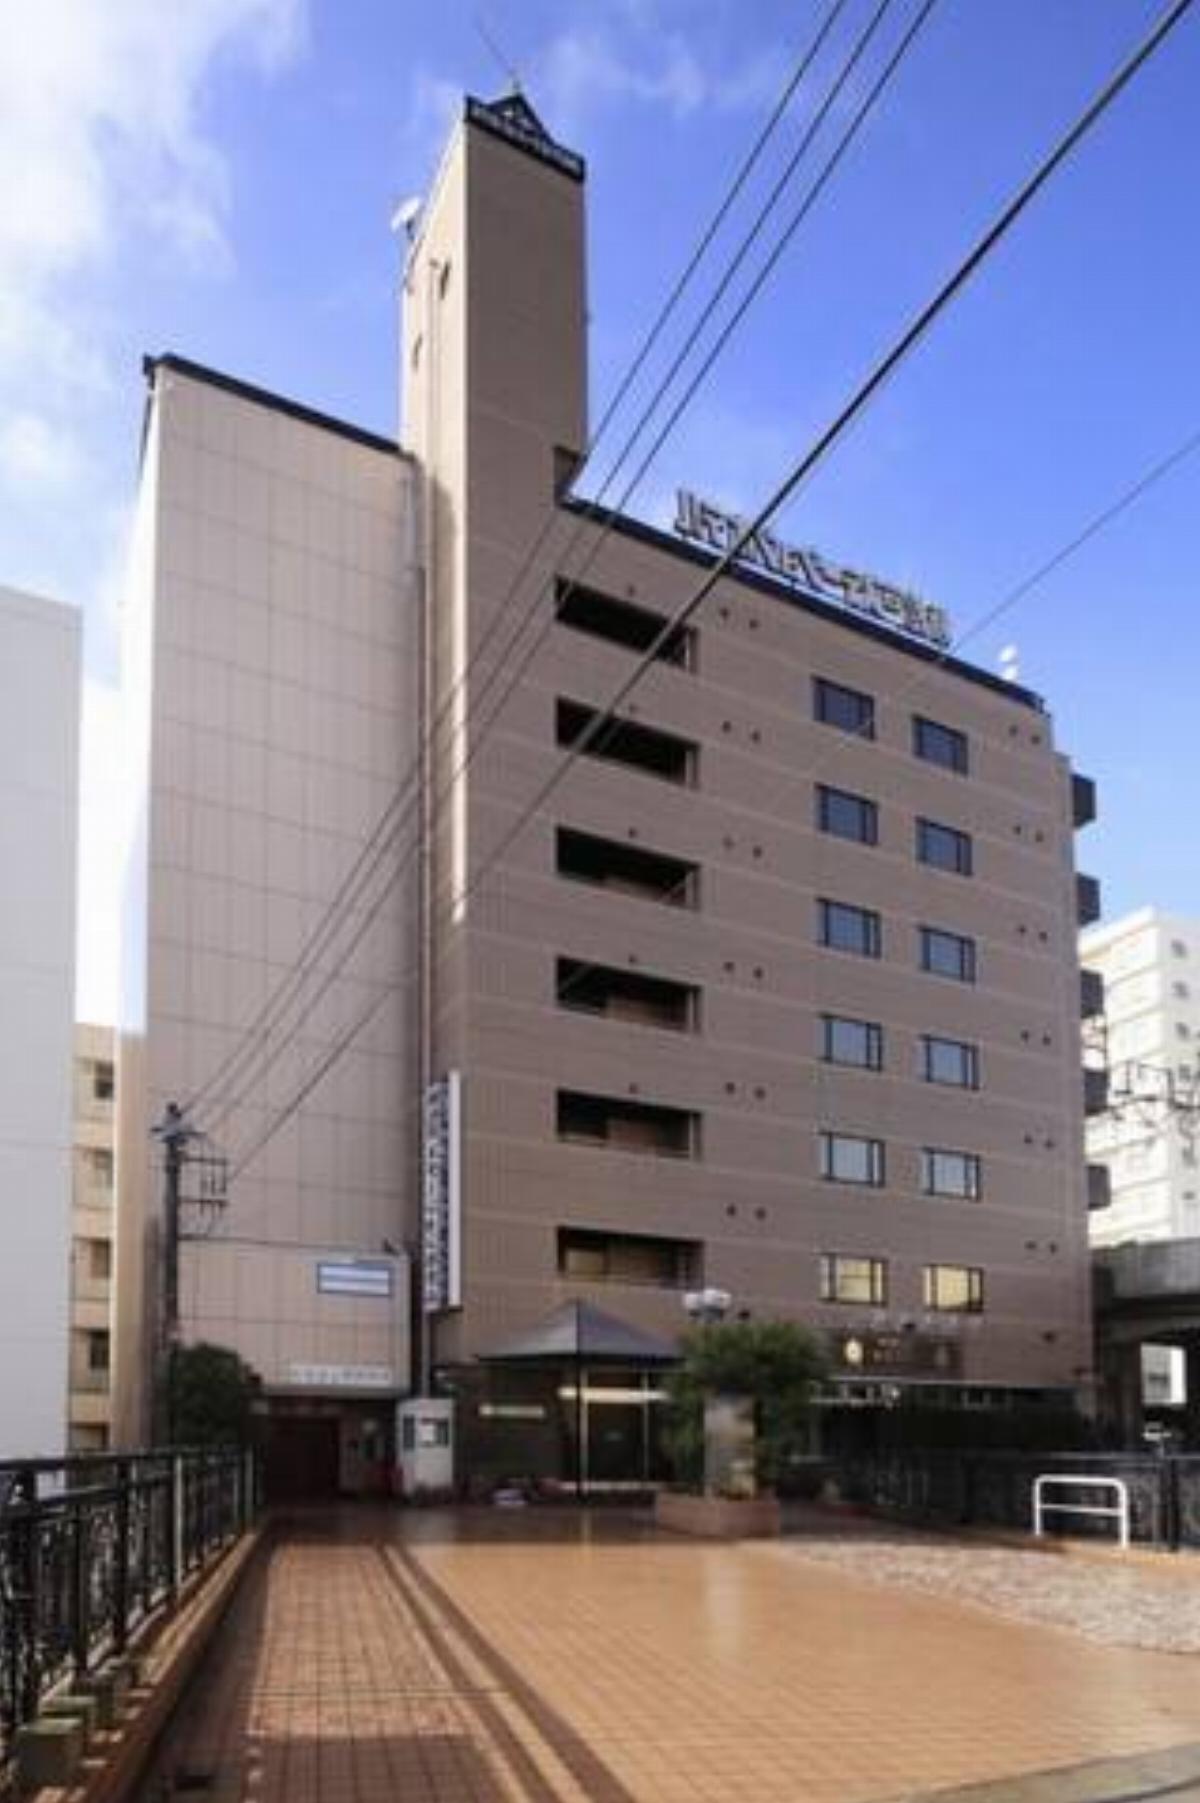 Shinmatsudo Station Hotel